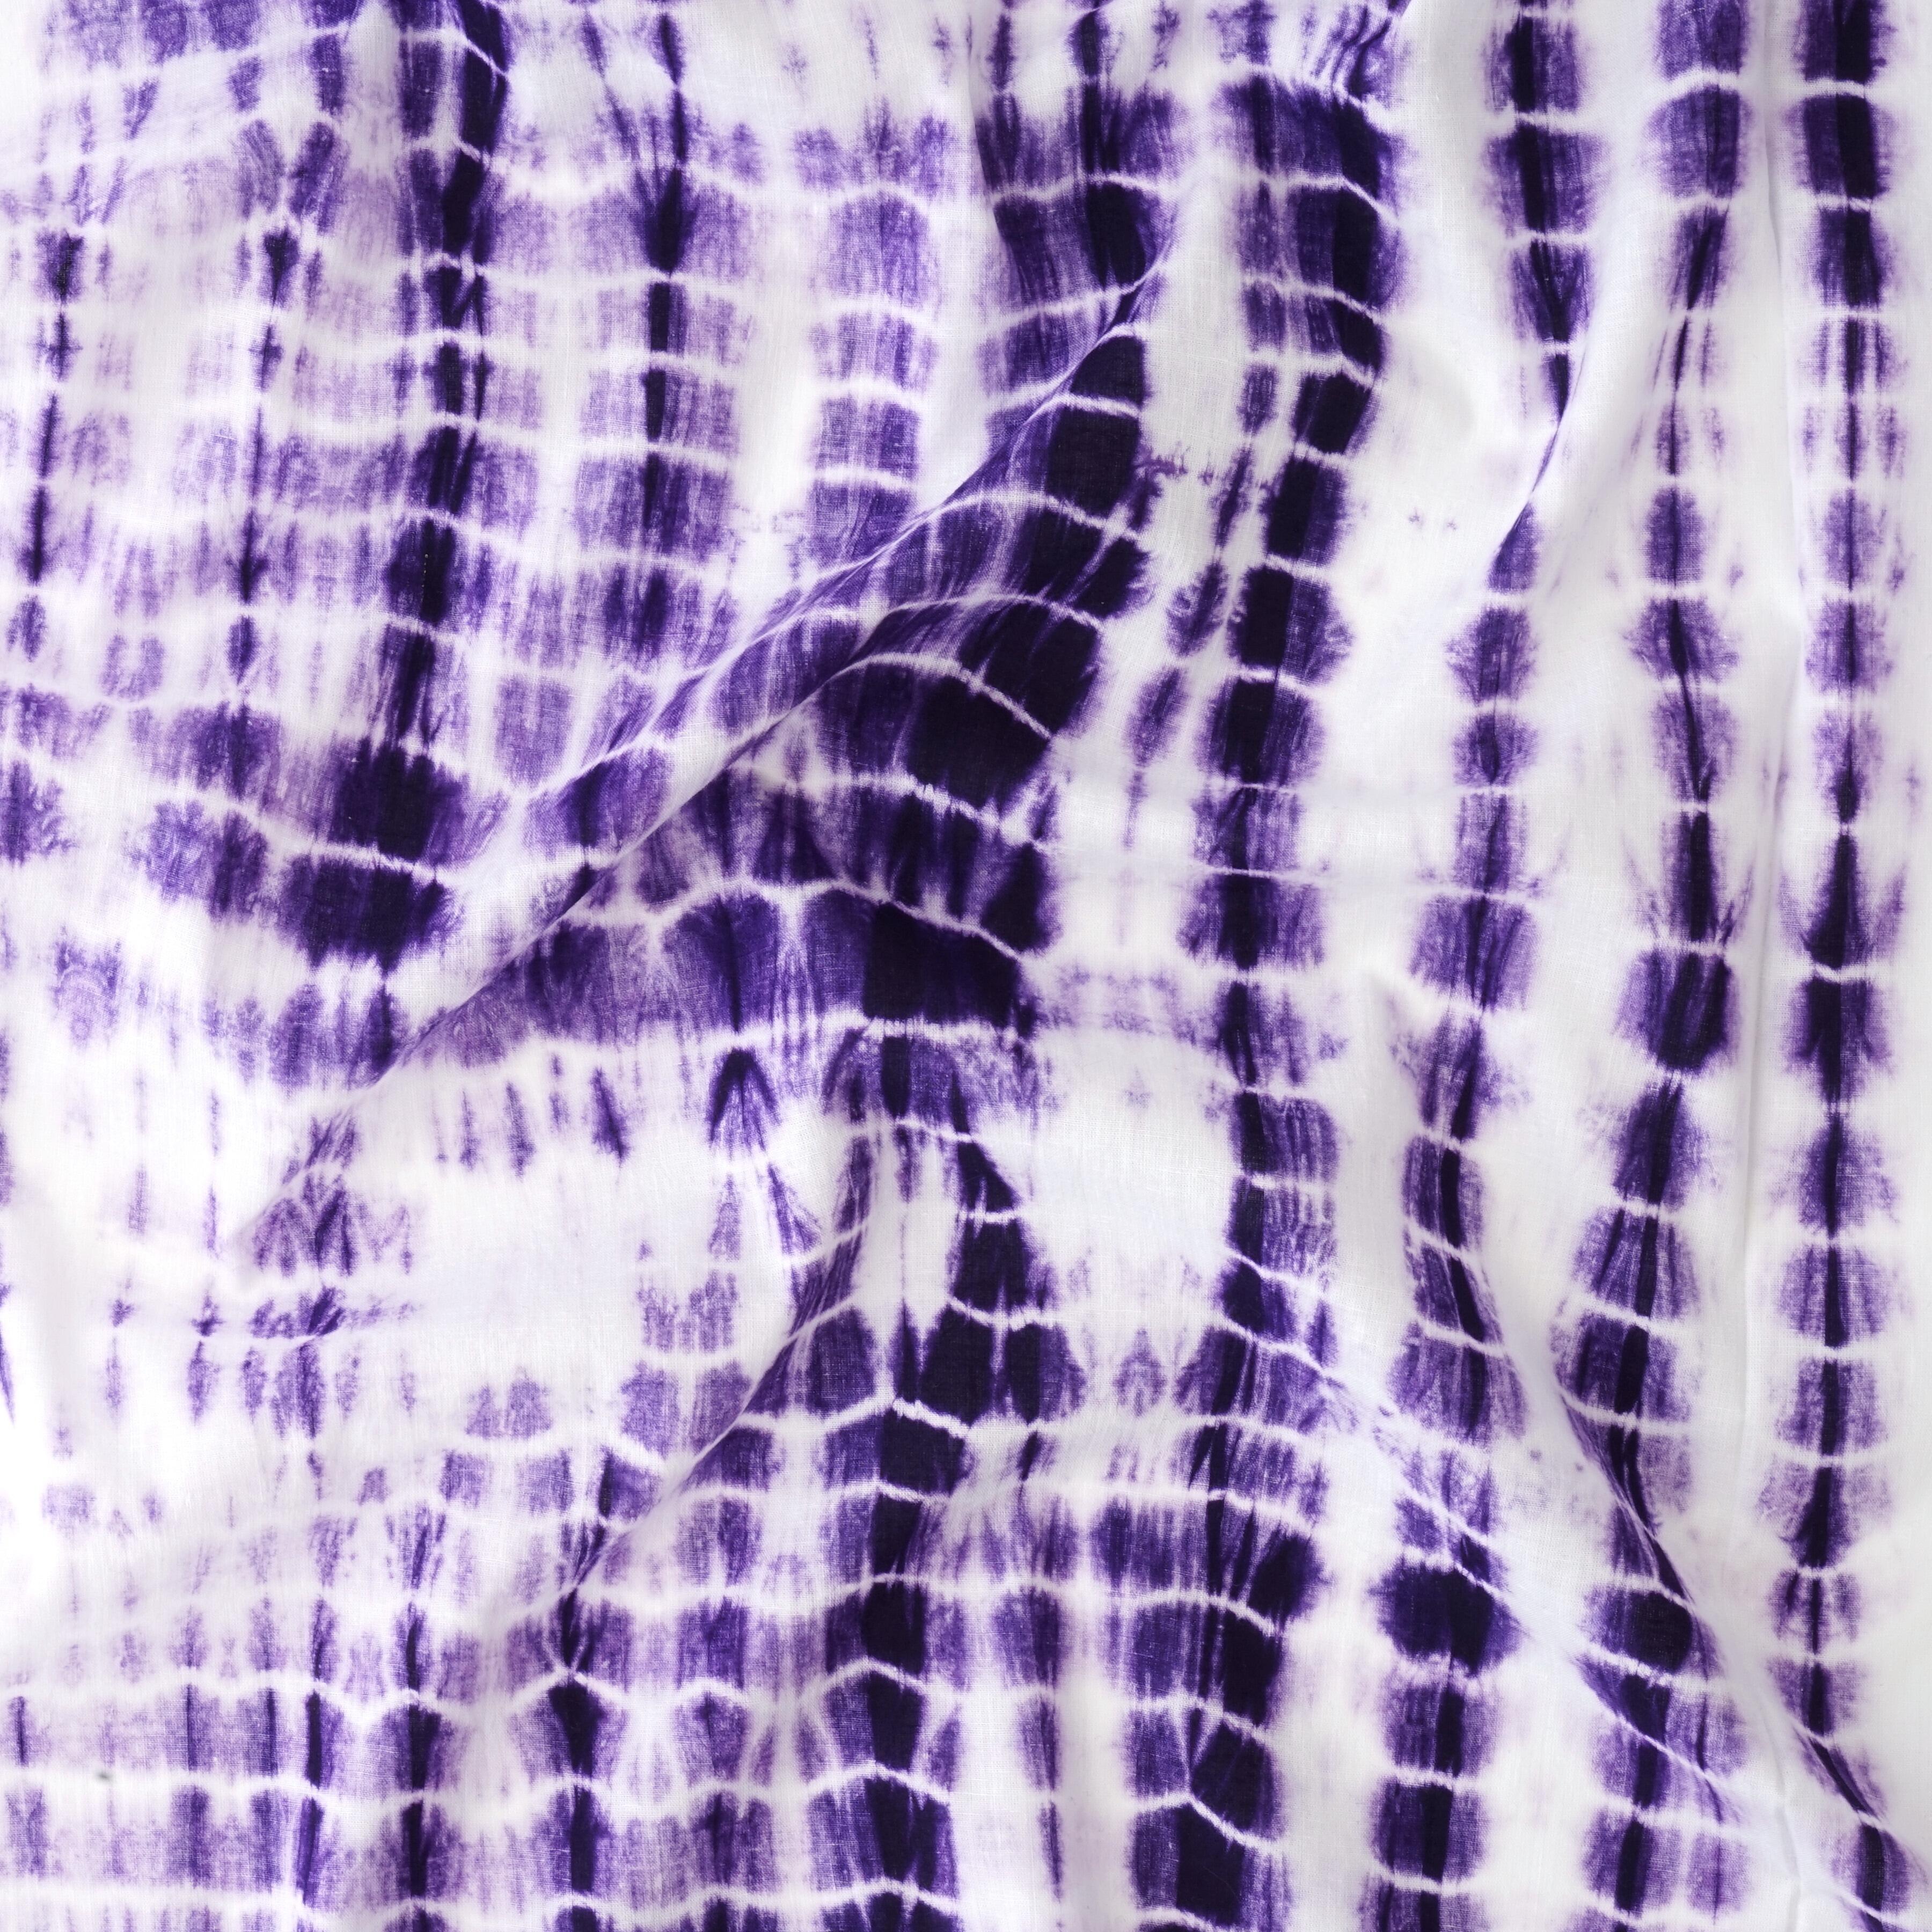 MUN03 - Tie Dye - Shibori - Cotton Cloth - Purple Dye - Contrast